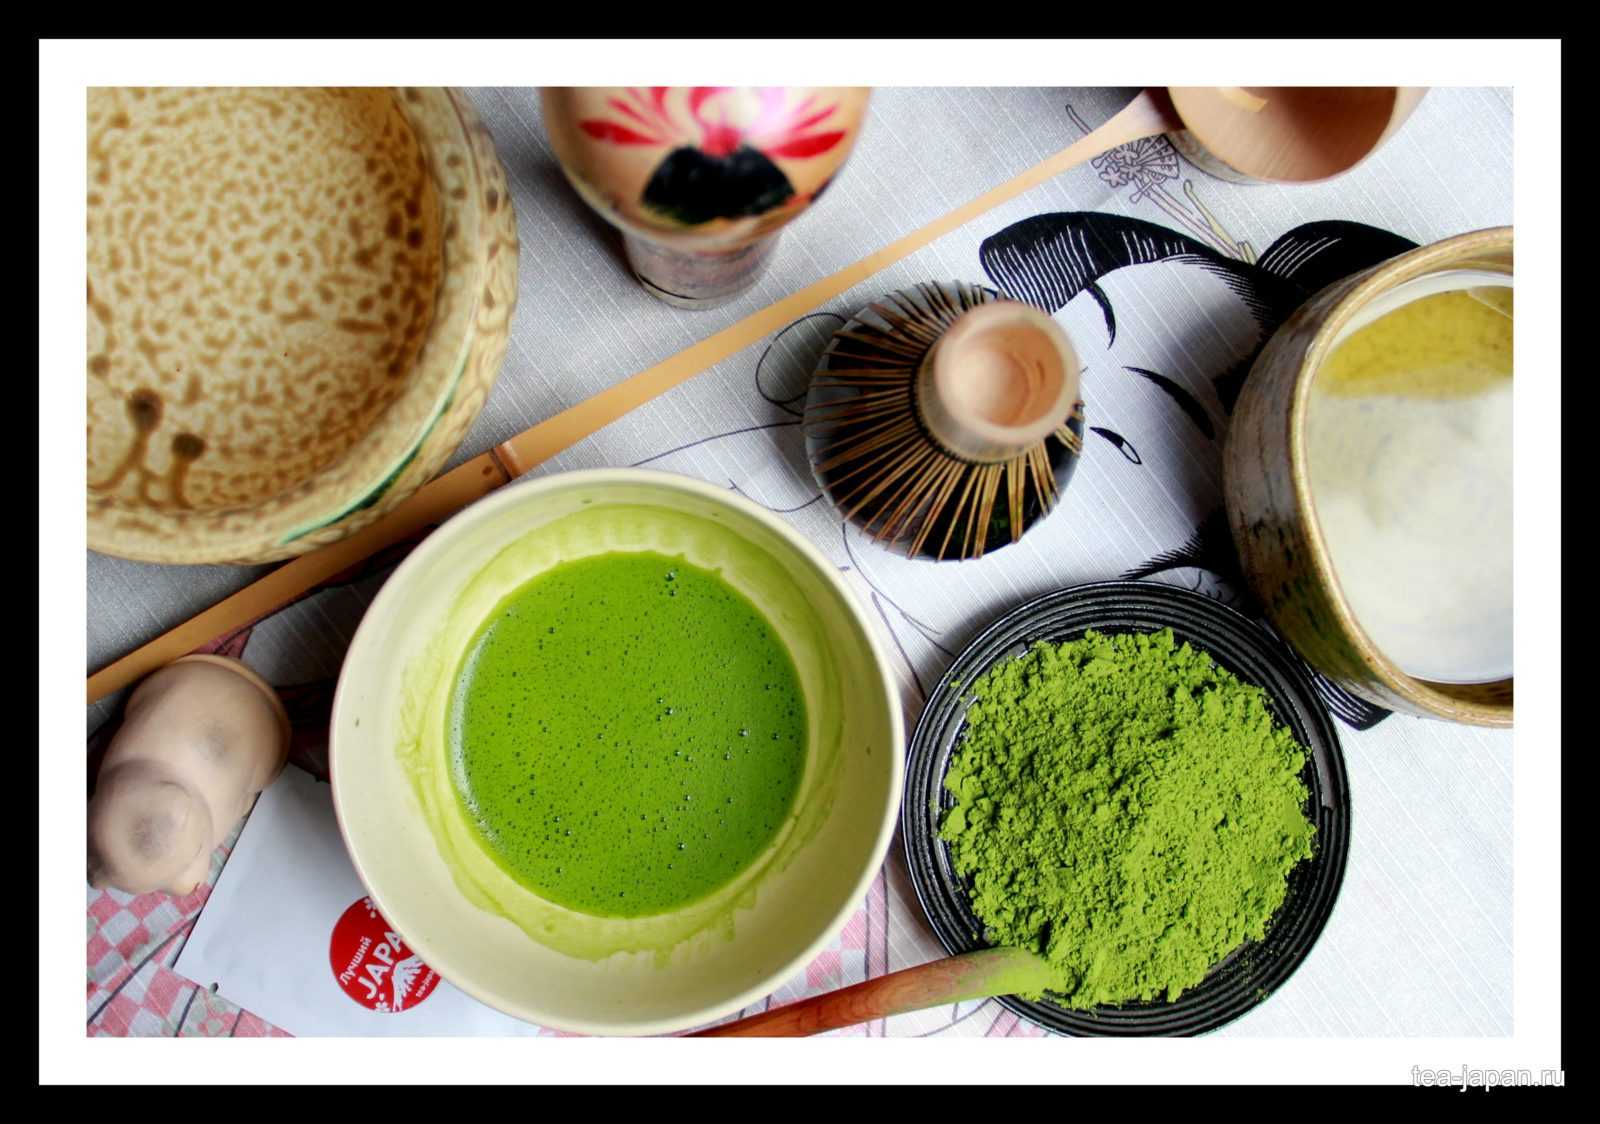 Чай матча: польза и вред японского зеленого чая маття, как заваривать